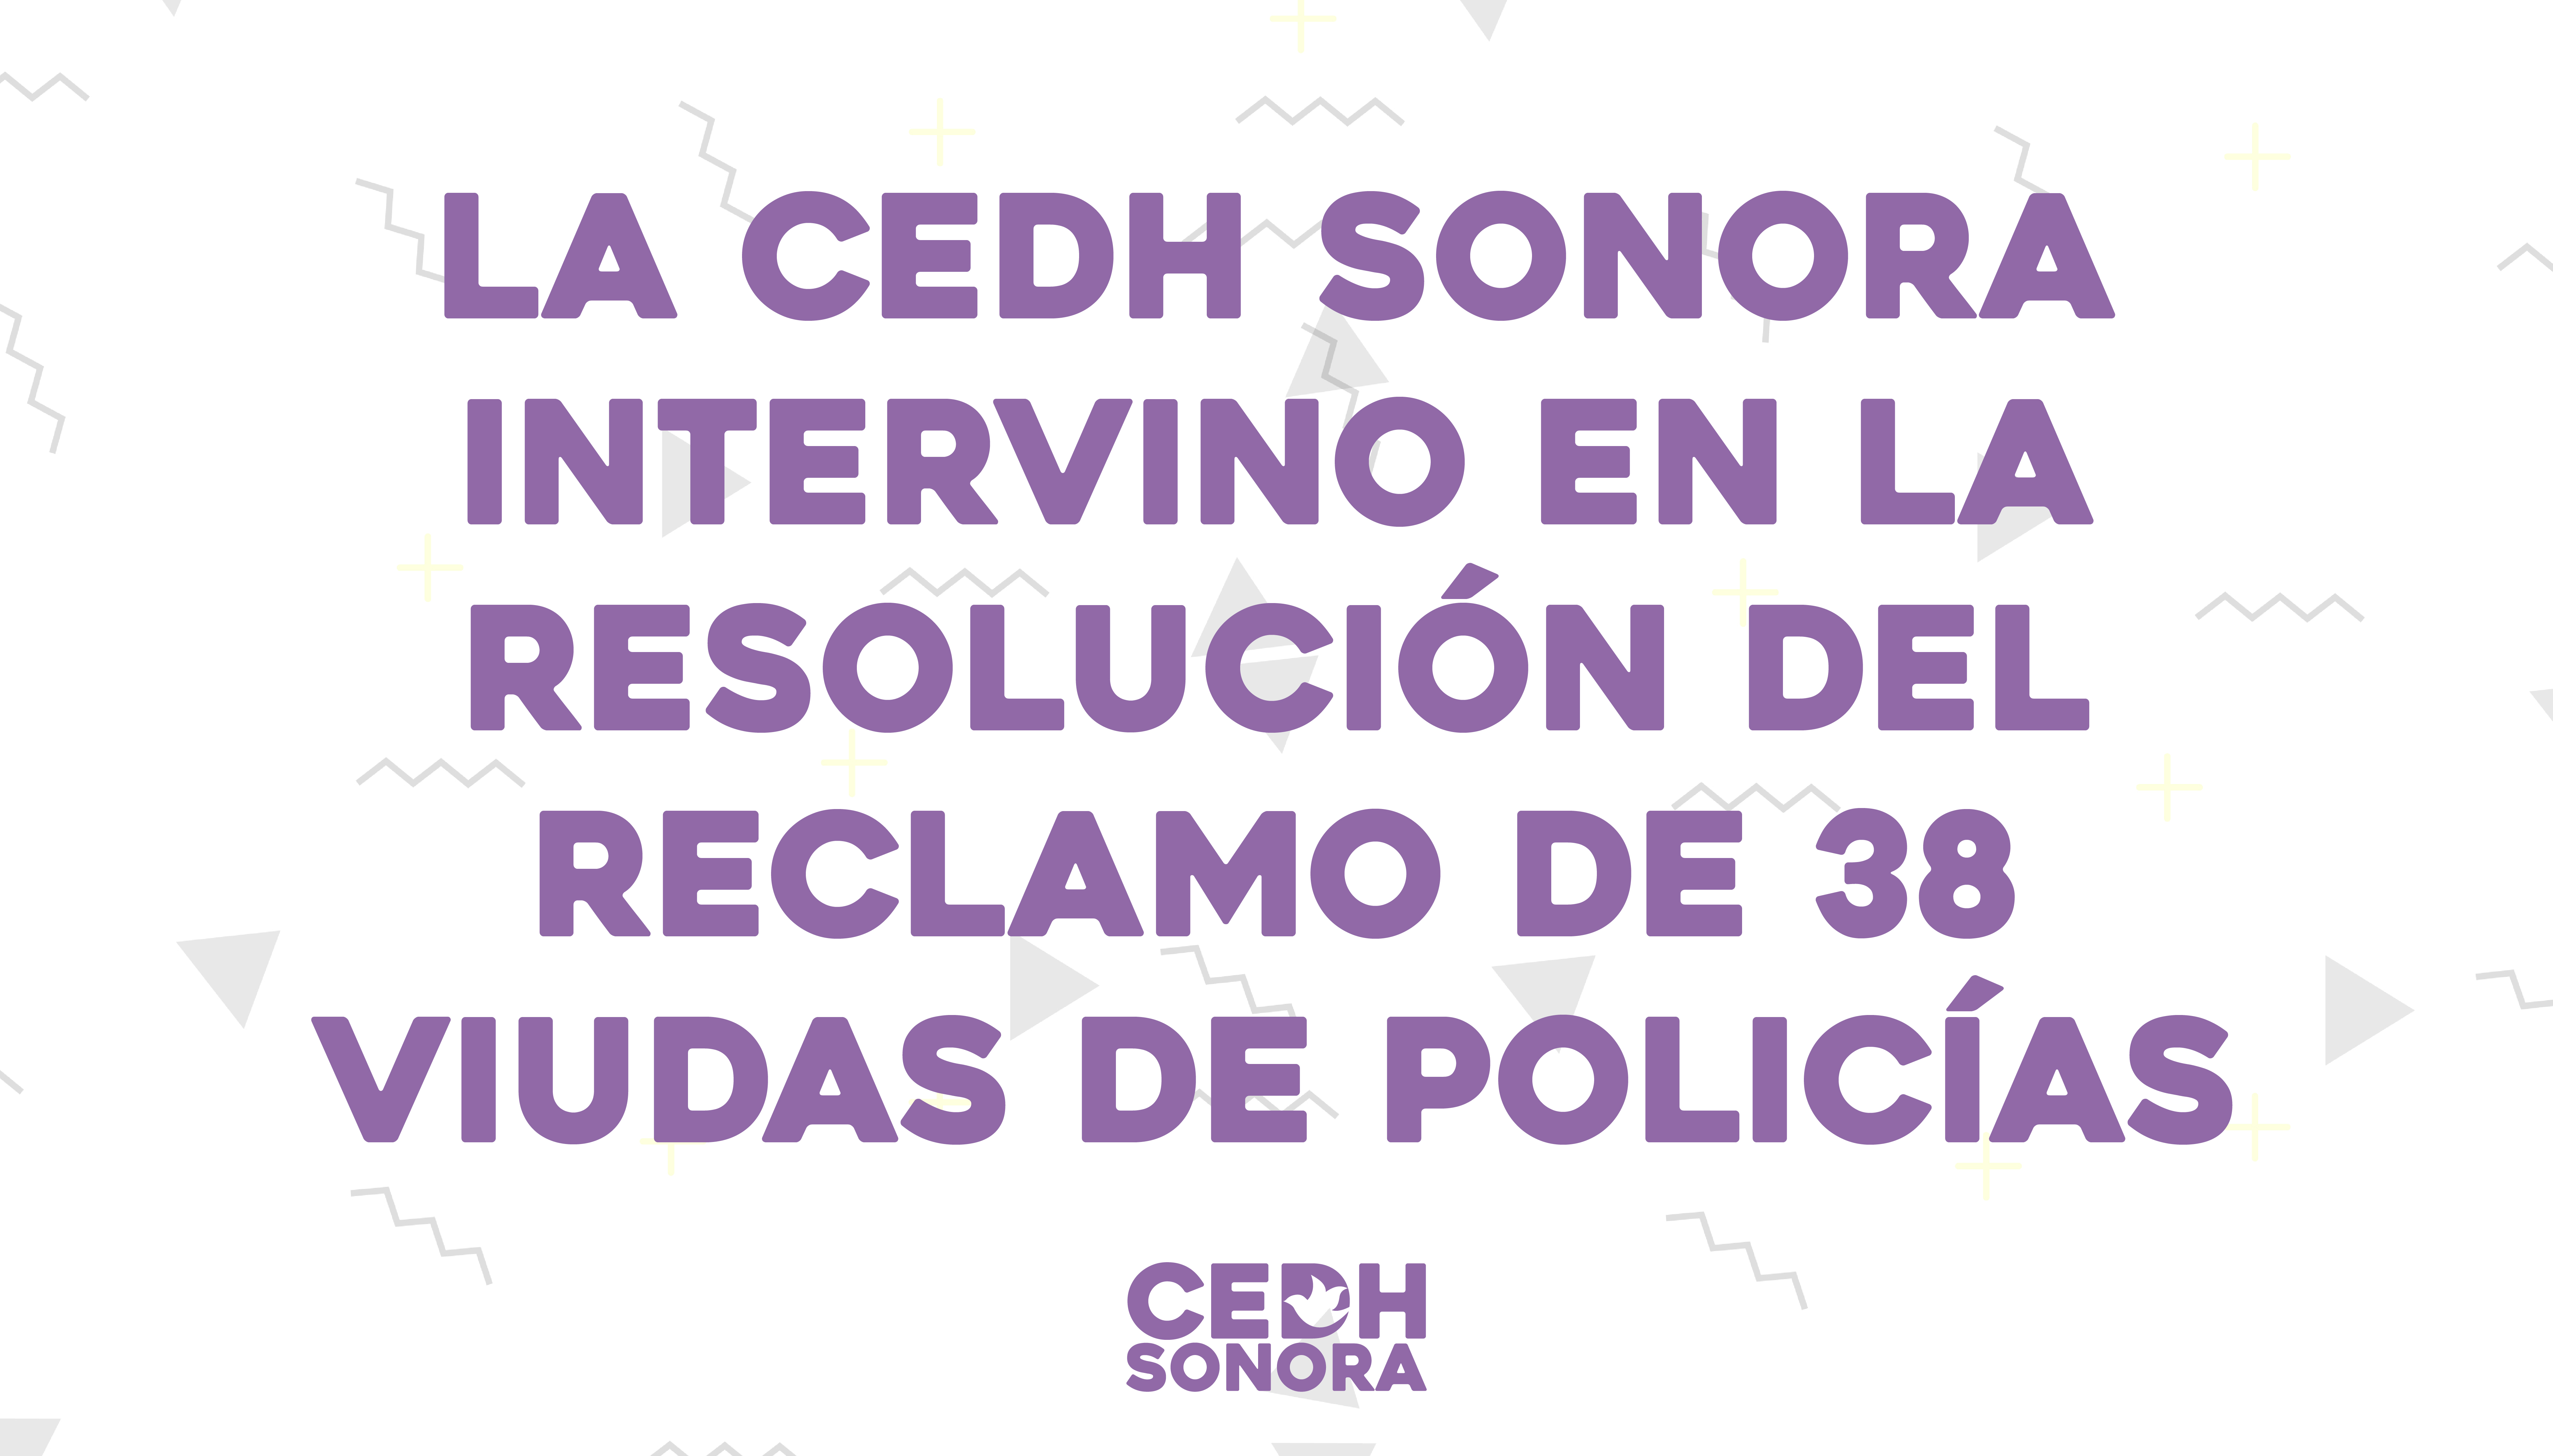 La CEDH Sonora intervino en la resolución del reclamo de 38 viudas de policías